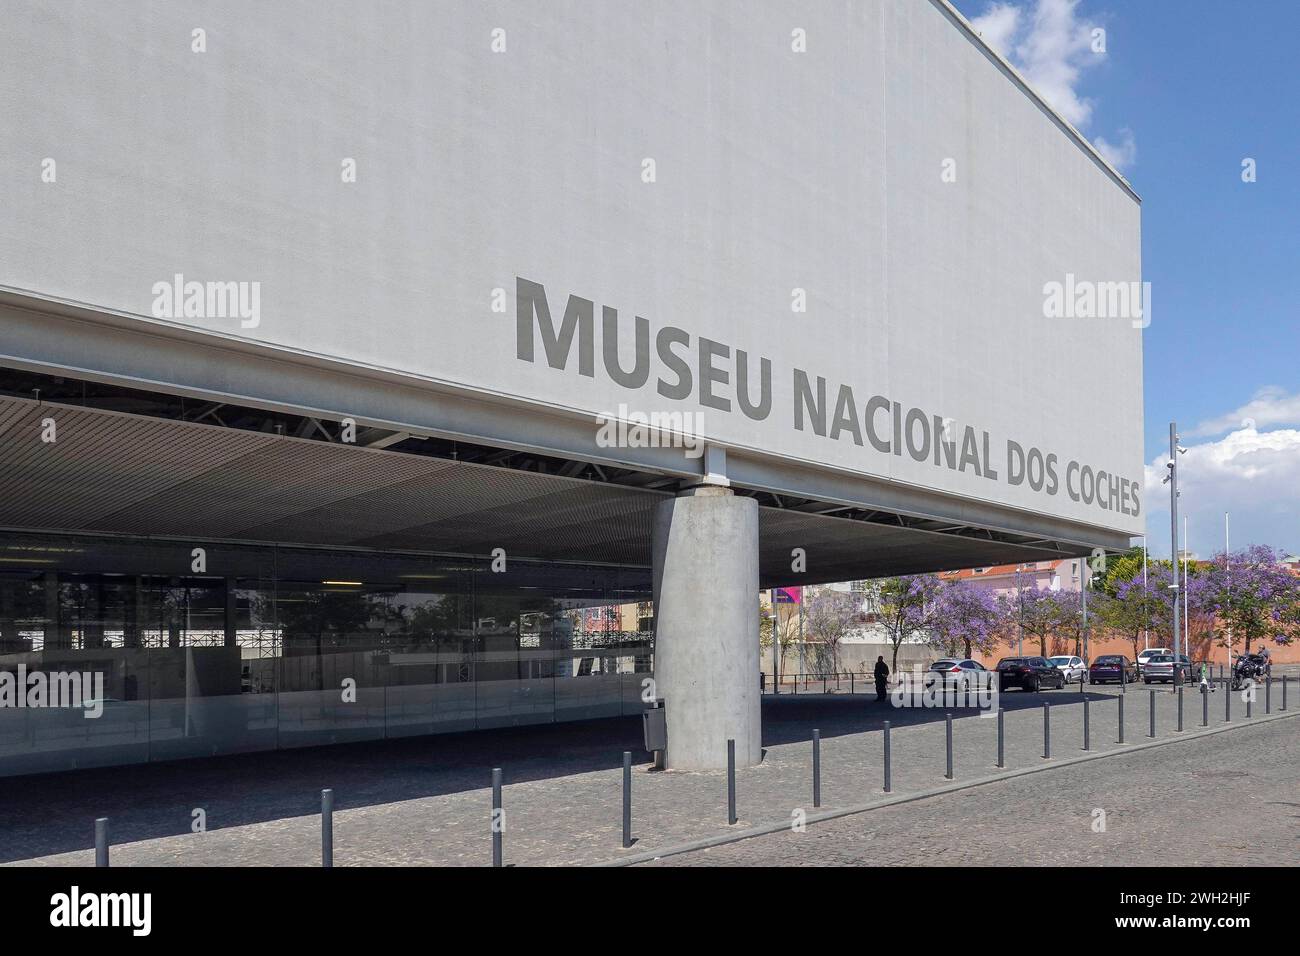 Portugal, Lisbonne, Musée national des entraîneurs - Museu Nacional dos Coches - est situé sur la place Afonso de Albuquerque dans le quartier de Belem. Le musée Banque D'Images